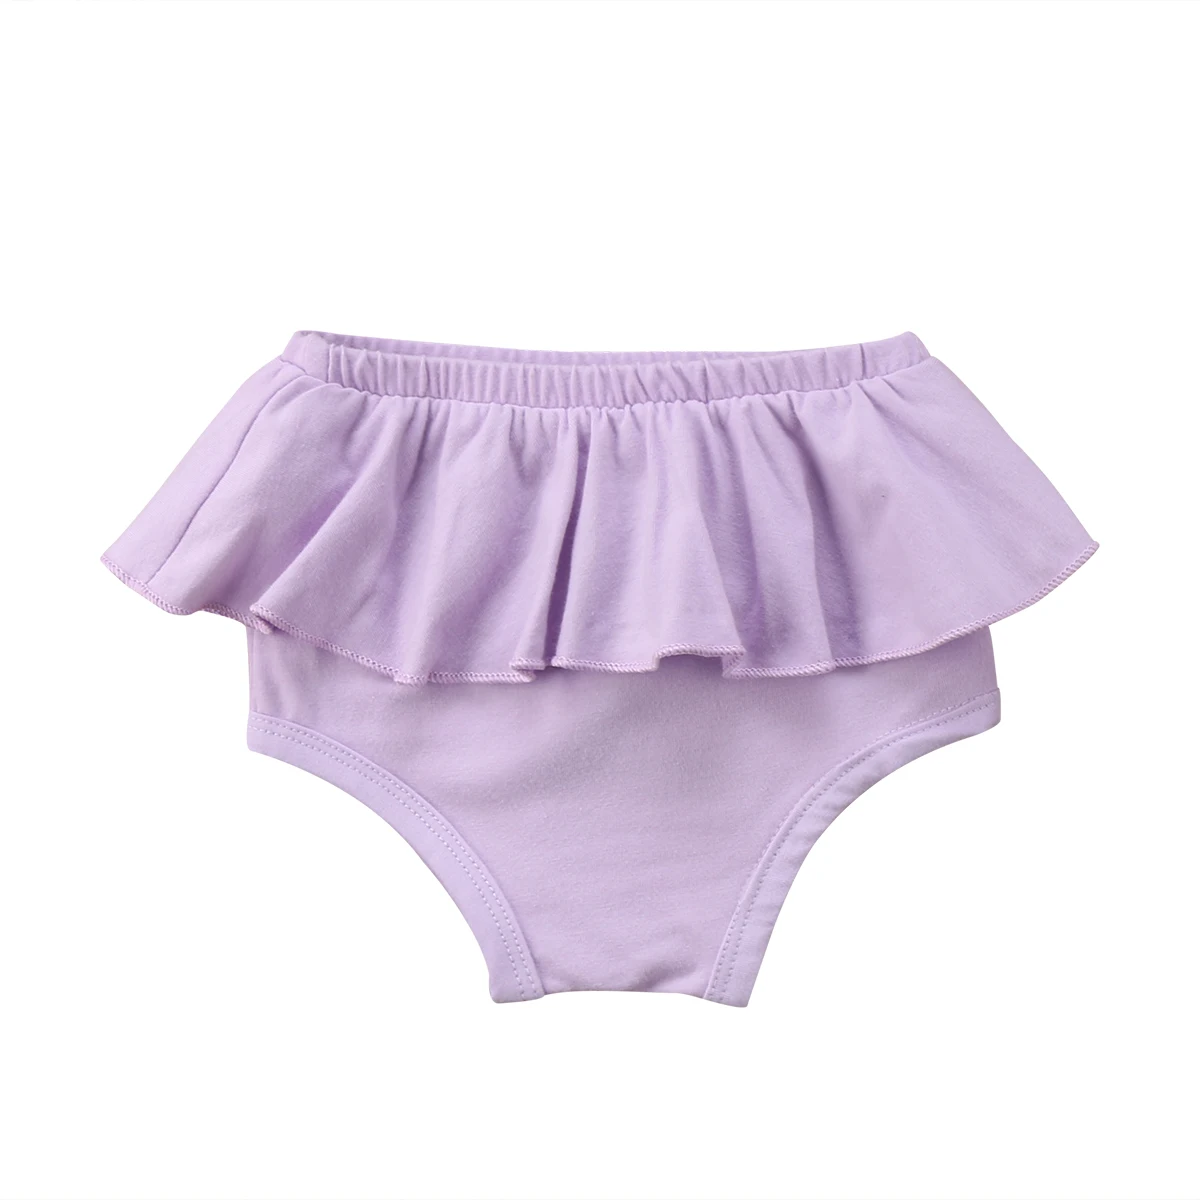 Новые хлопковые пляжные летние трусики-пачки с кружевными оборками для маленьких мальчиков и девочек пышные трусики с узорами для новорожденных - Цвет: Фиолетовый